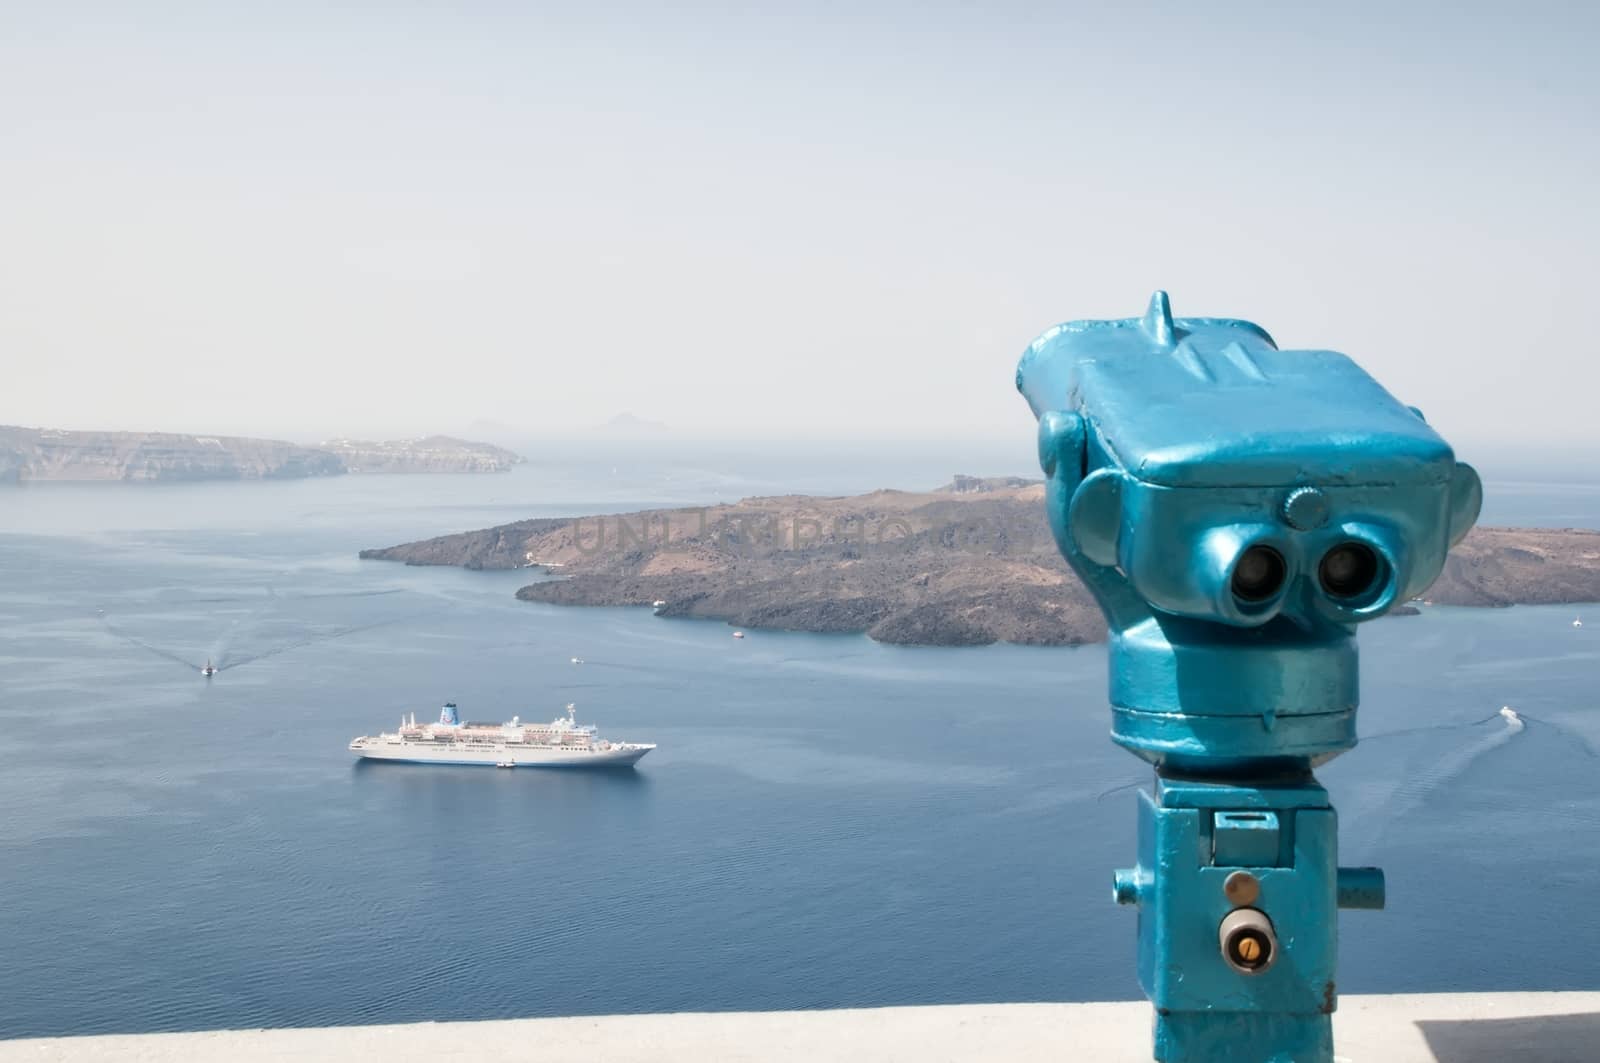 Observing binoculars in Santorini, Greece by mitakag